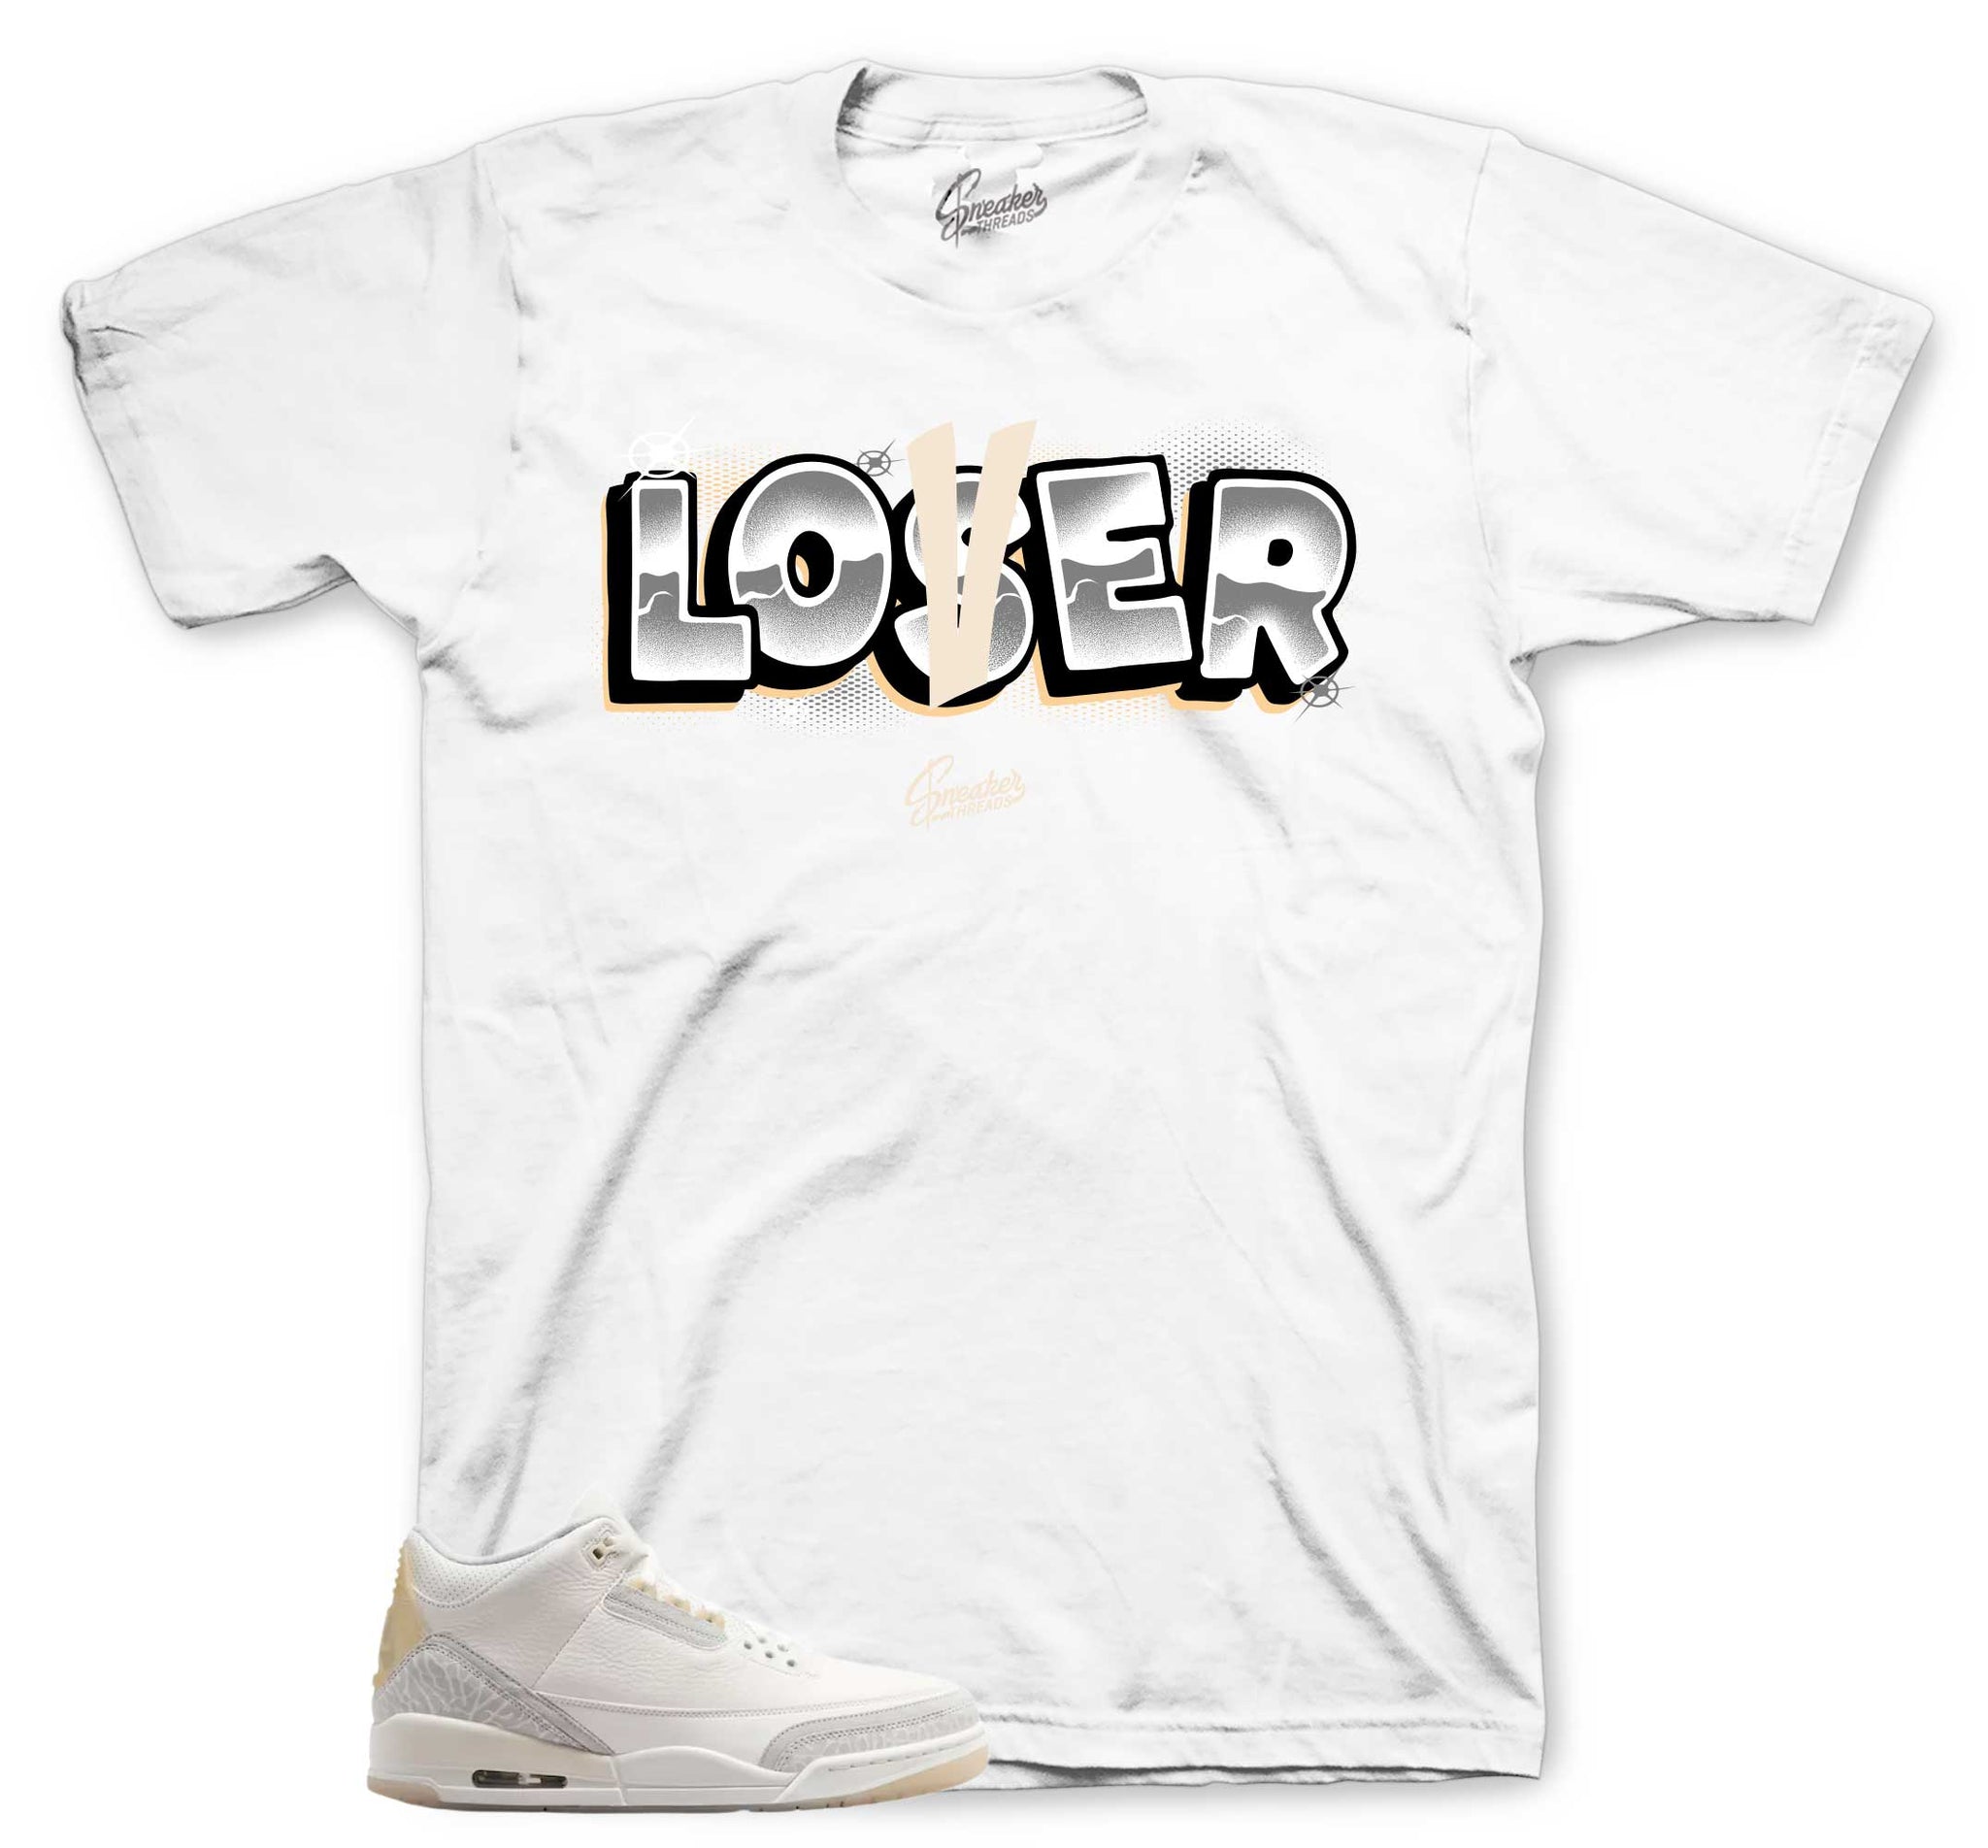 Retro 3 Ivory Shirt - Loser Lover - White